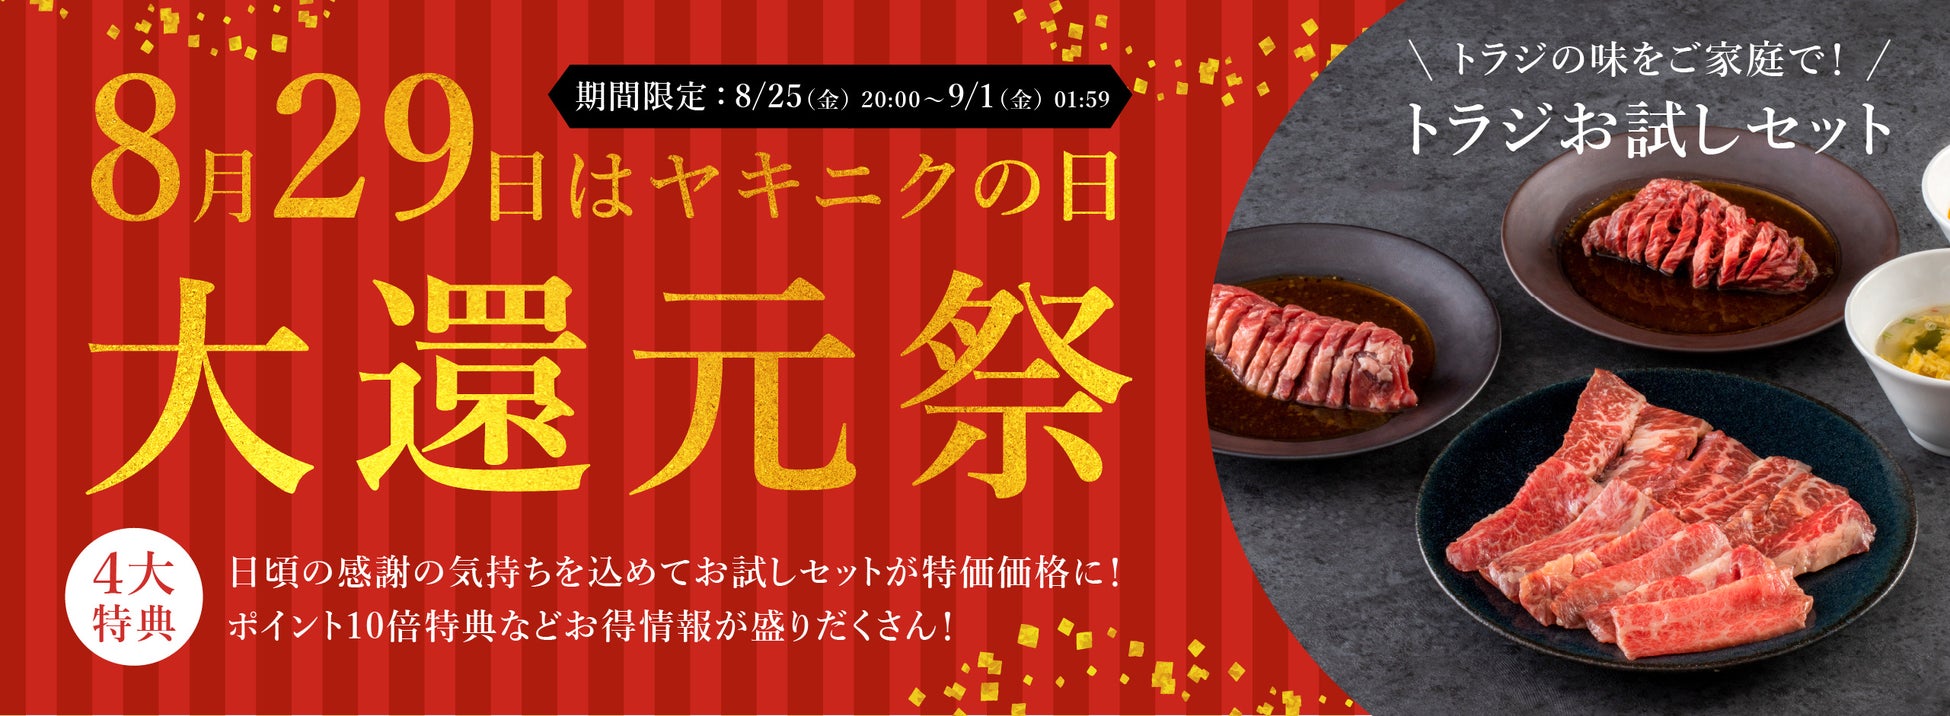 8月29日は「ヤキニクの日」焼肉トラジ公式通販サイトで恒例の大還元祭を開催